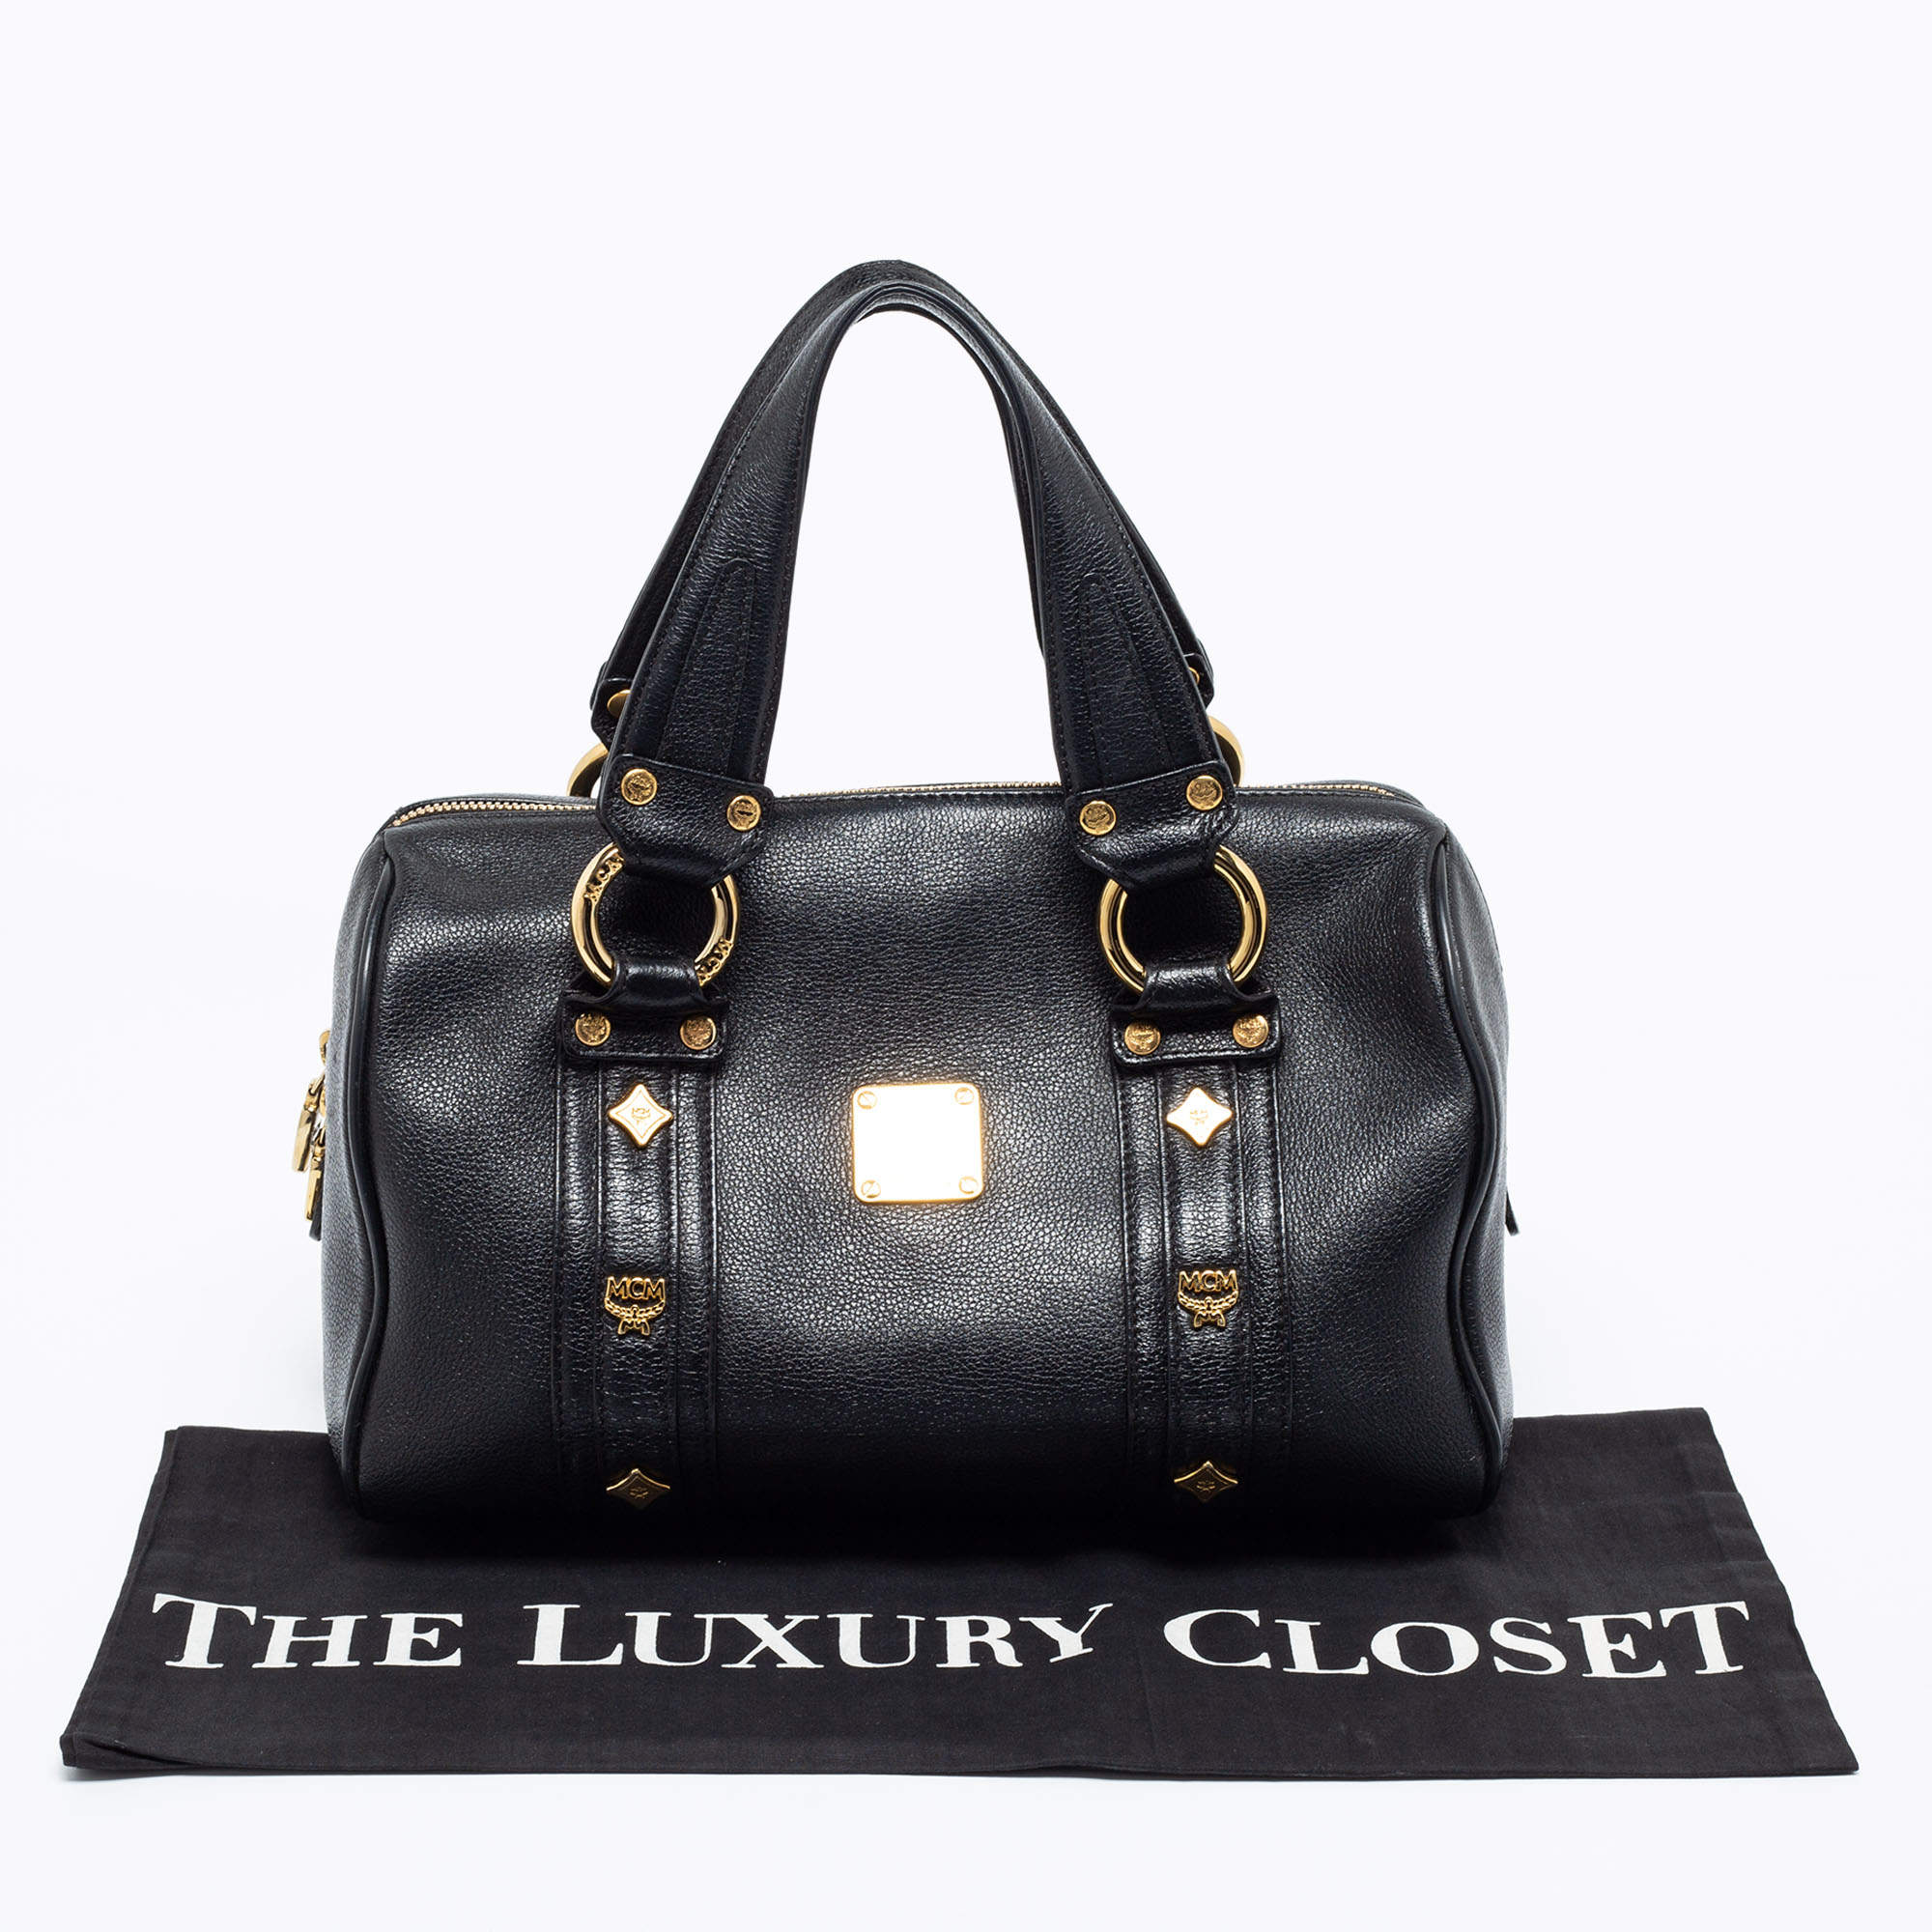 MCM shoulder bag black gold metal fittings leather used clutch bag